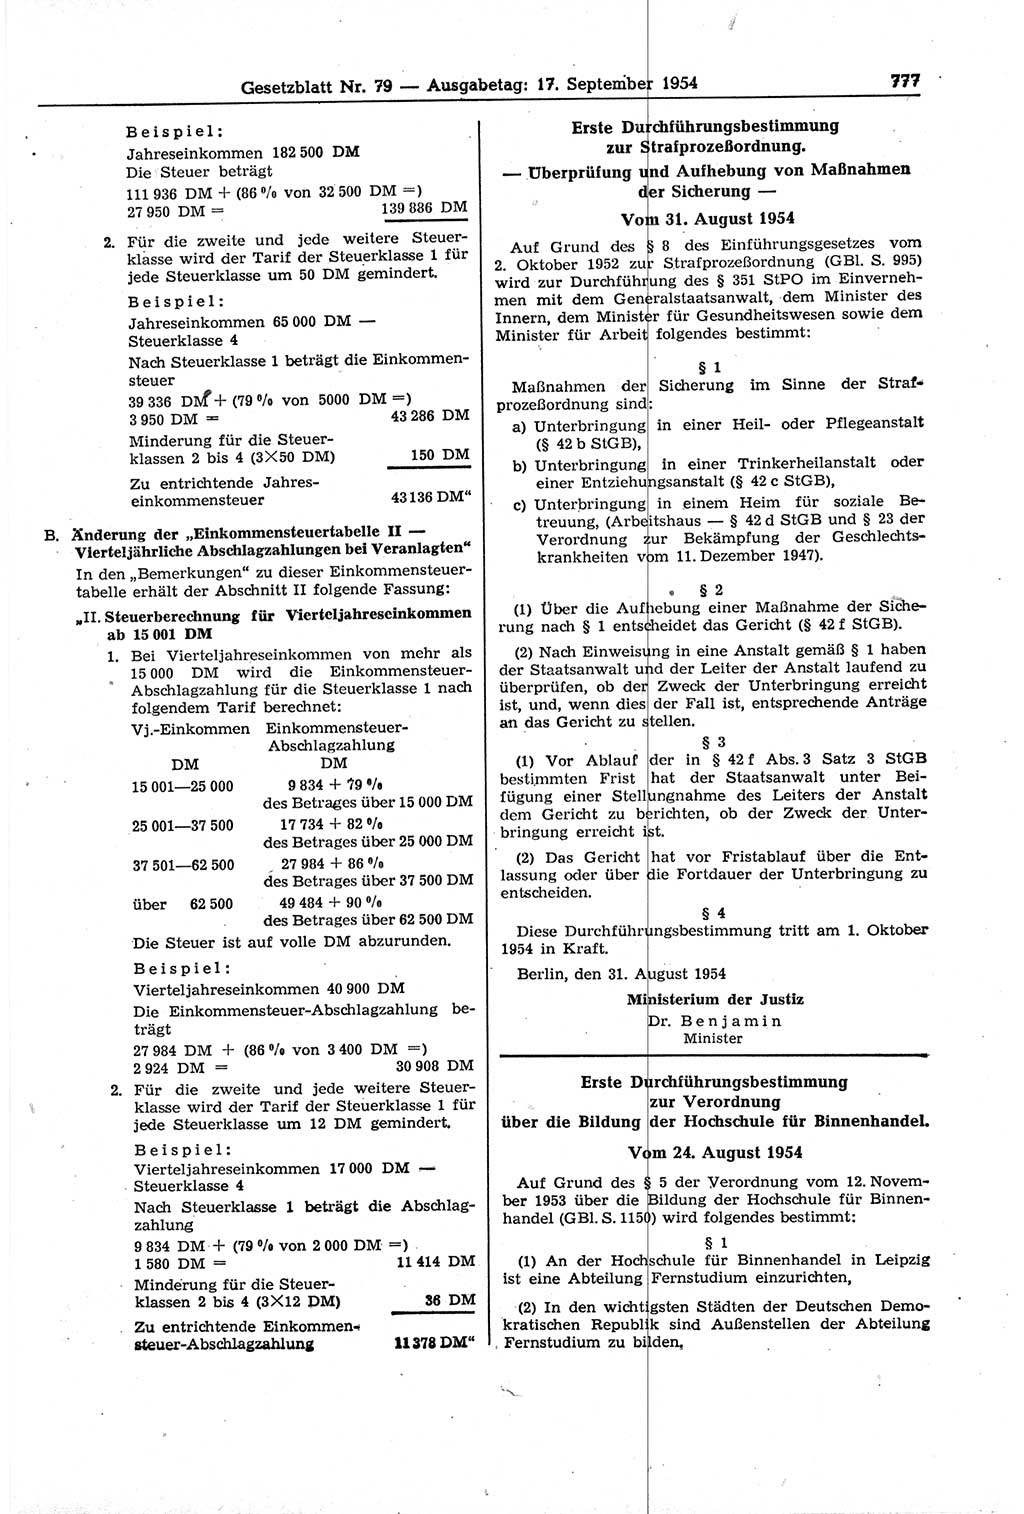 Gesetzblatt (GBl.) der Deutschen Demokratischen Republik (DDR) 1954, Seite 777 (GBl. DDR 1954, S. 777)